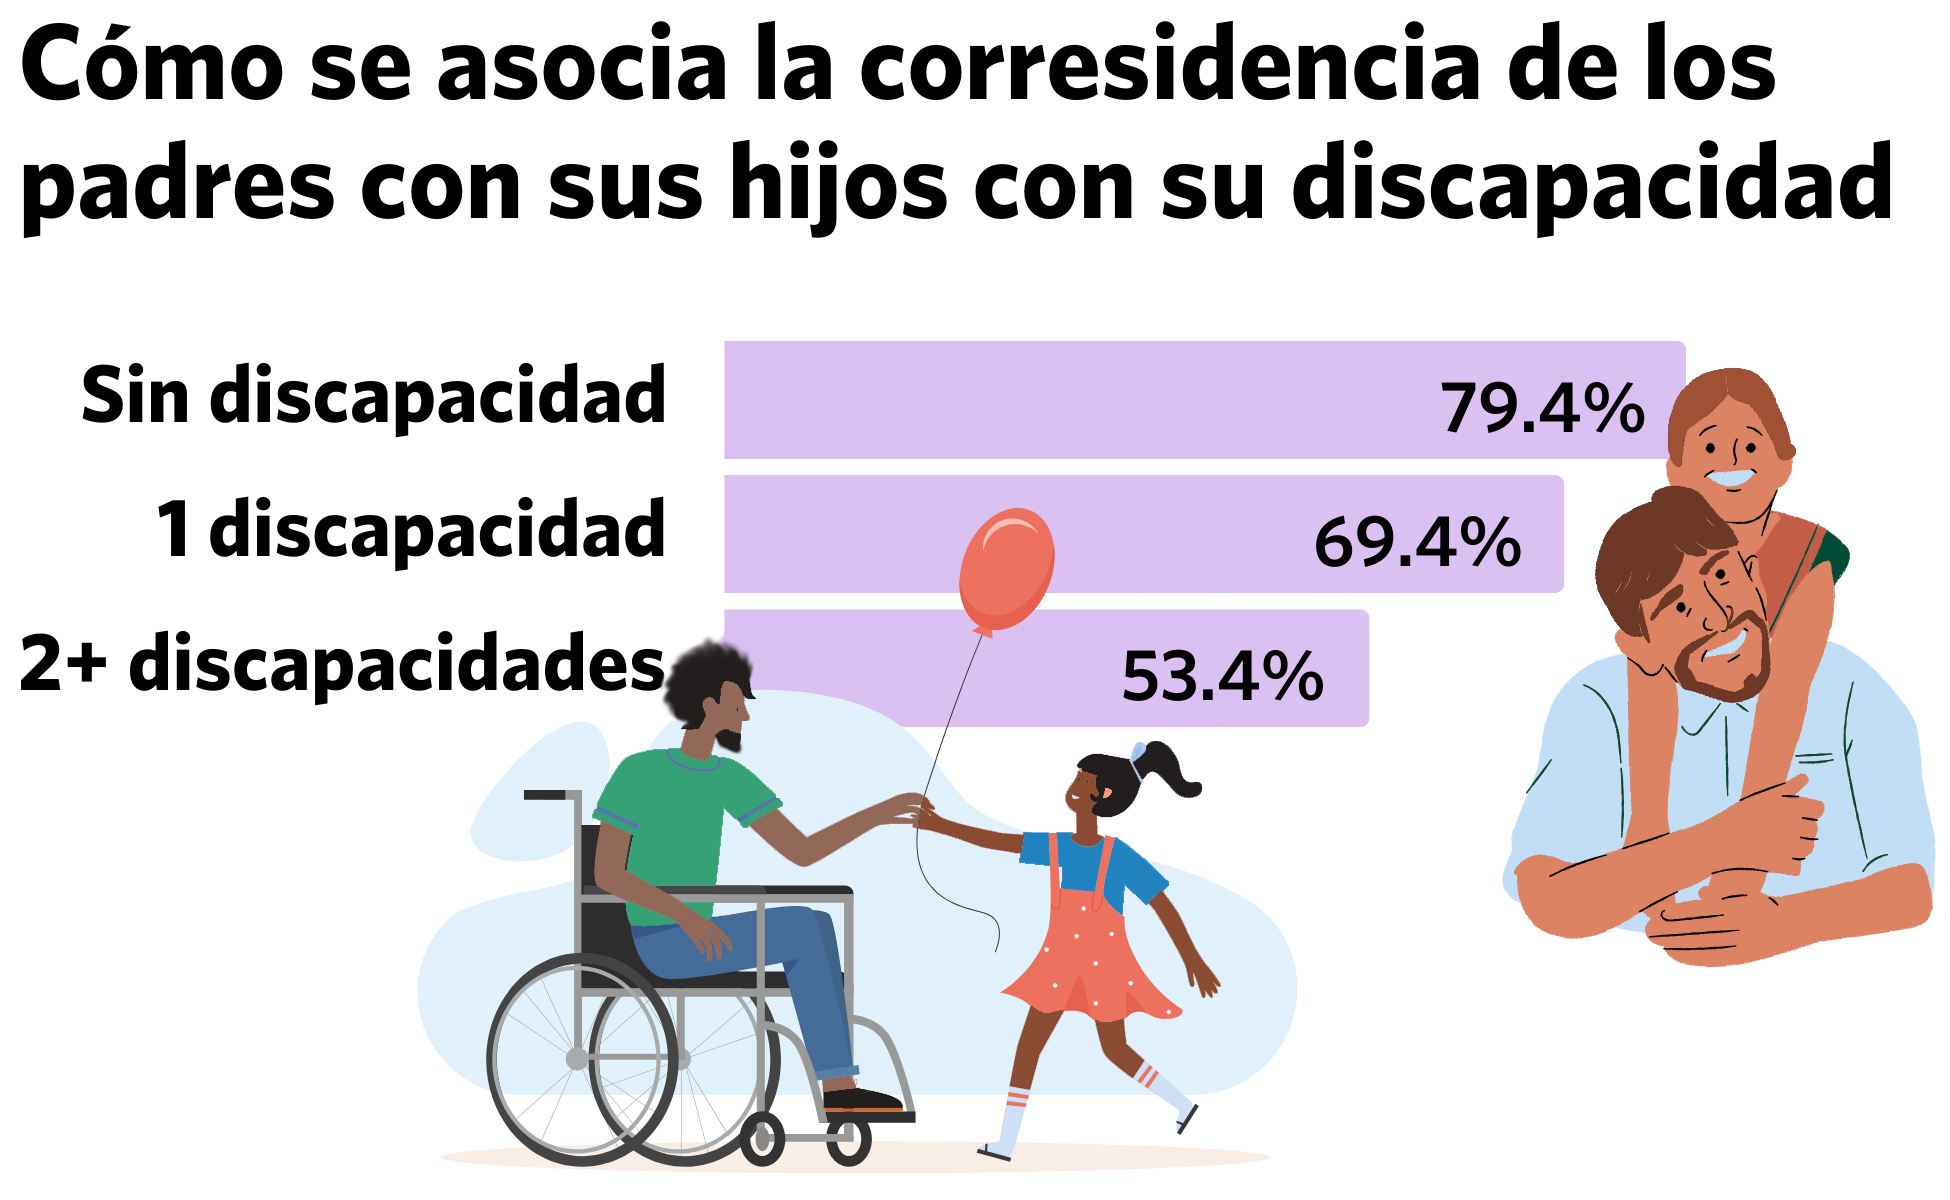 Diferencias de residencia entre padres con y sin discapacidades en Estados Unidos